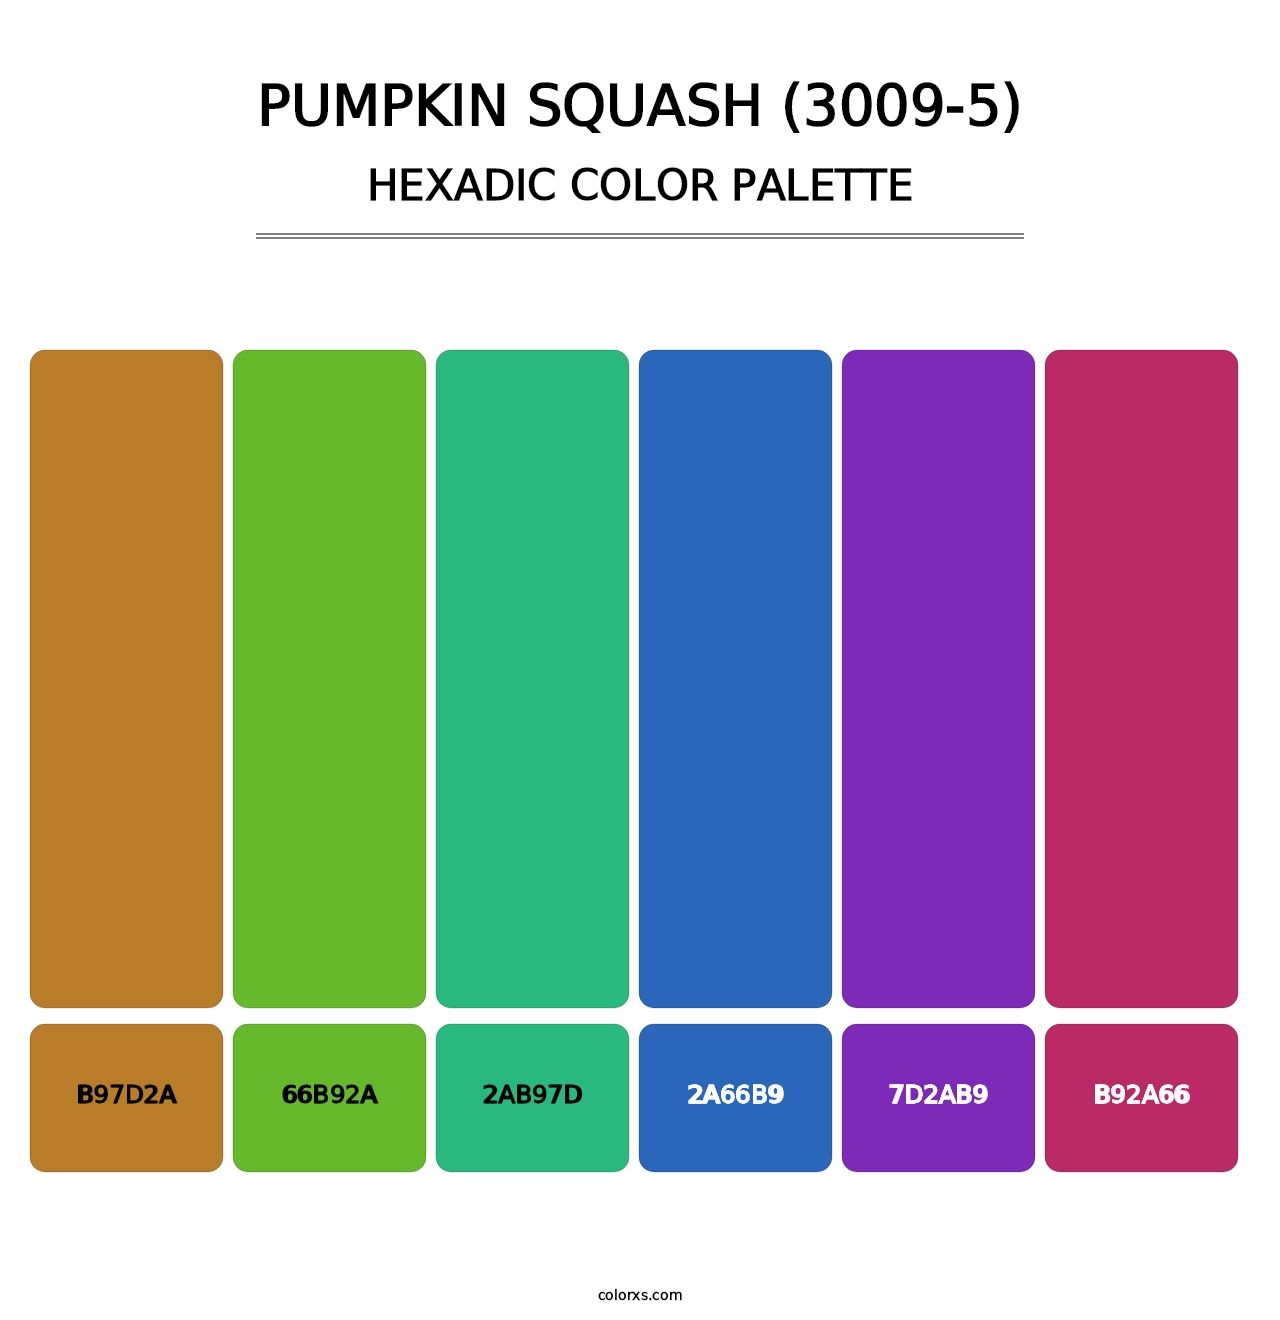 Pumpkin Squash (3009-5) - Hexadic Color Palette